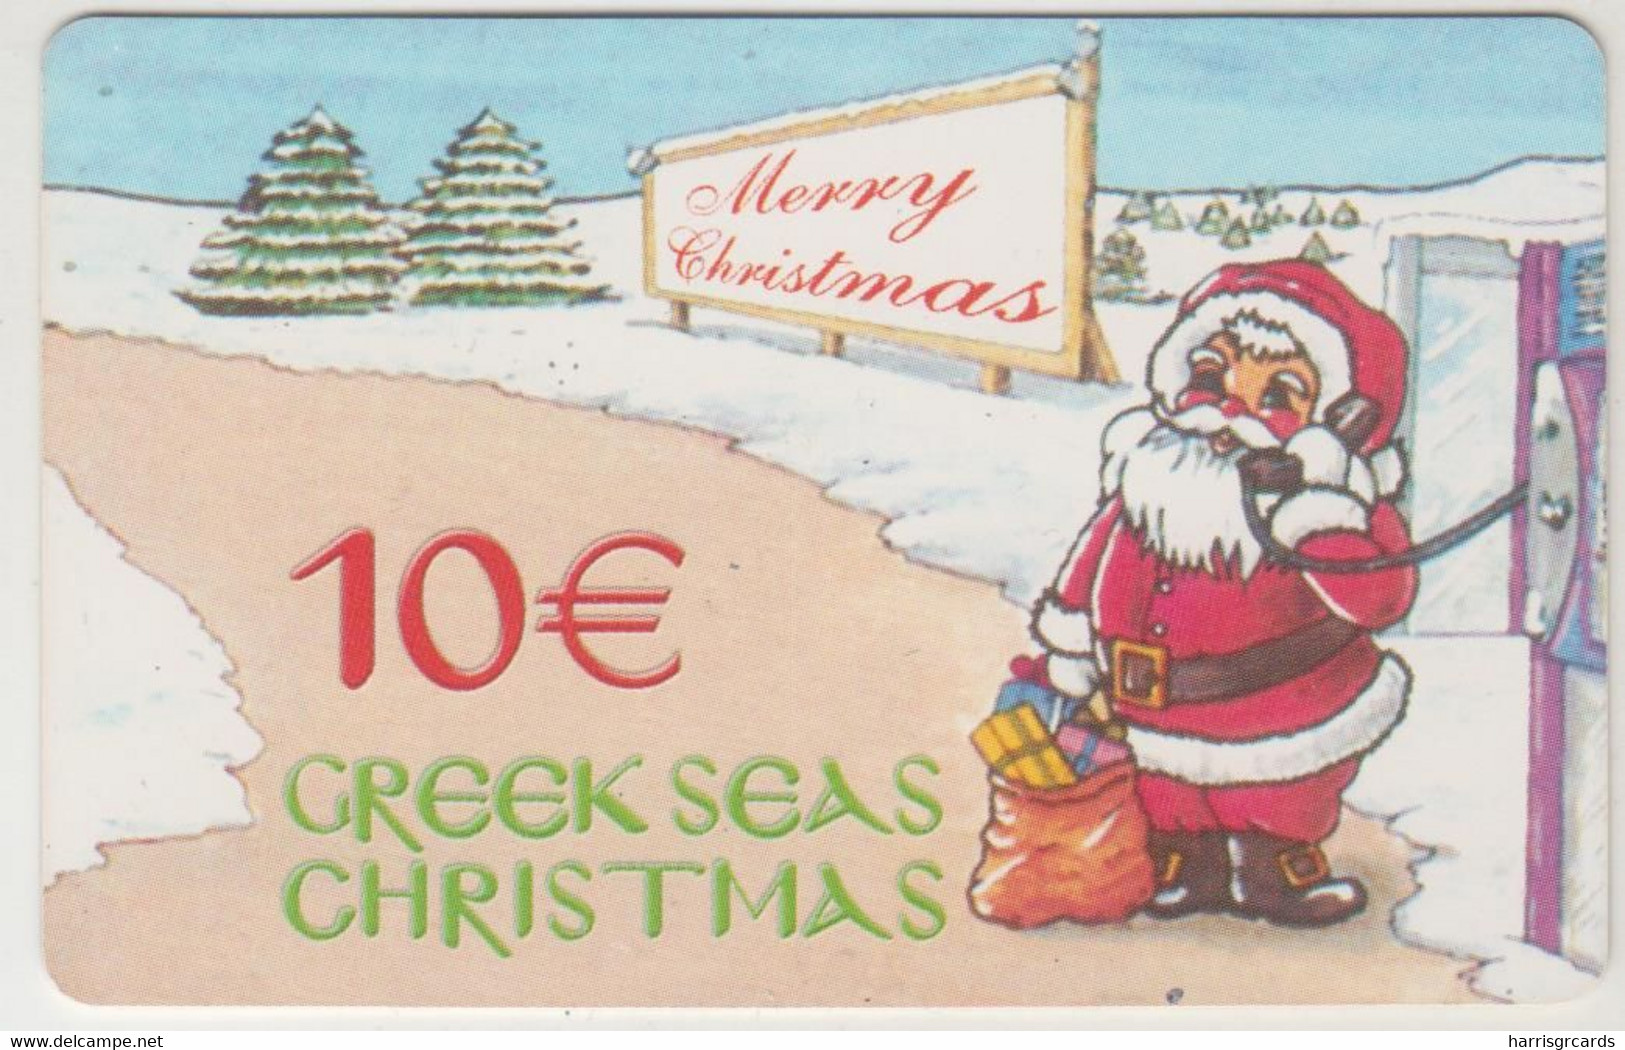 GREECE - Greek Seas Christmas (Santa Calling), Amimex Prepaid Card 10€ , Used - Noel